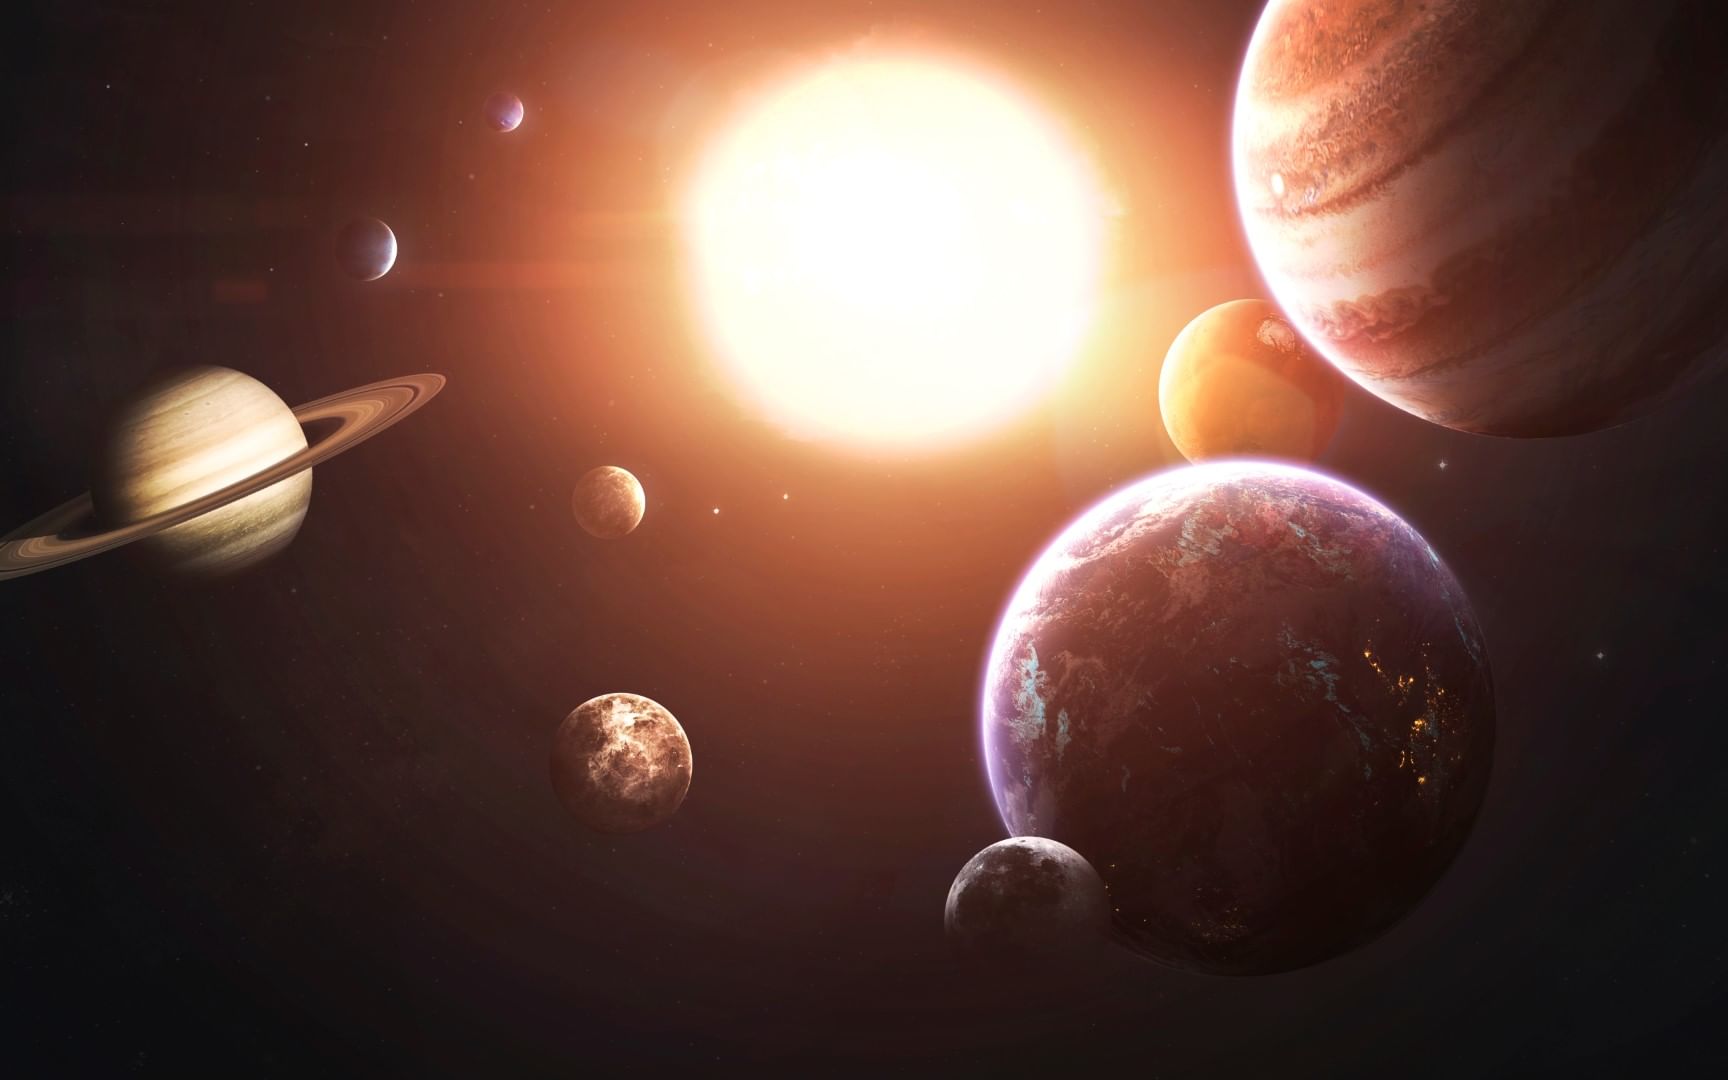 علماء فلك يكتشفون قرصاً كوكبياً قطره 3300 مرة ضعف المسافة بين الأرض والشمس .